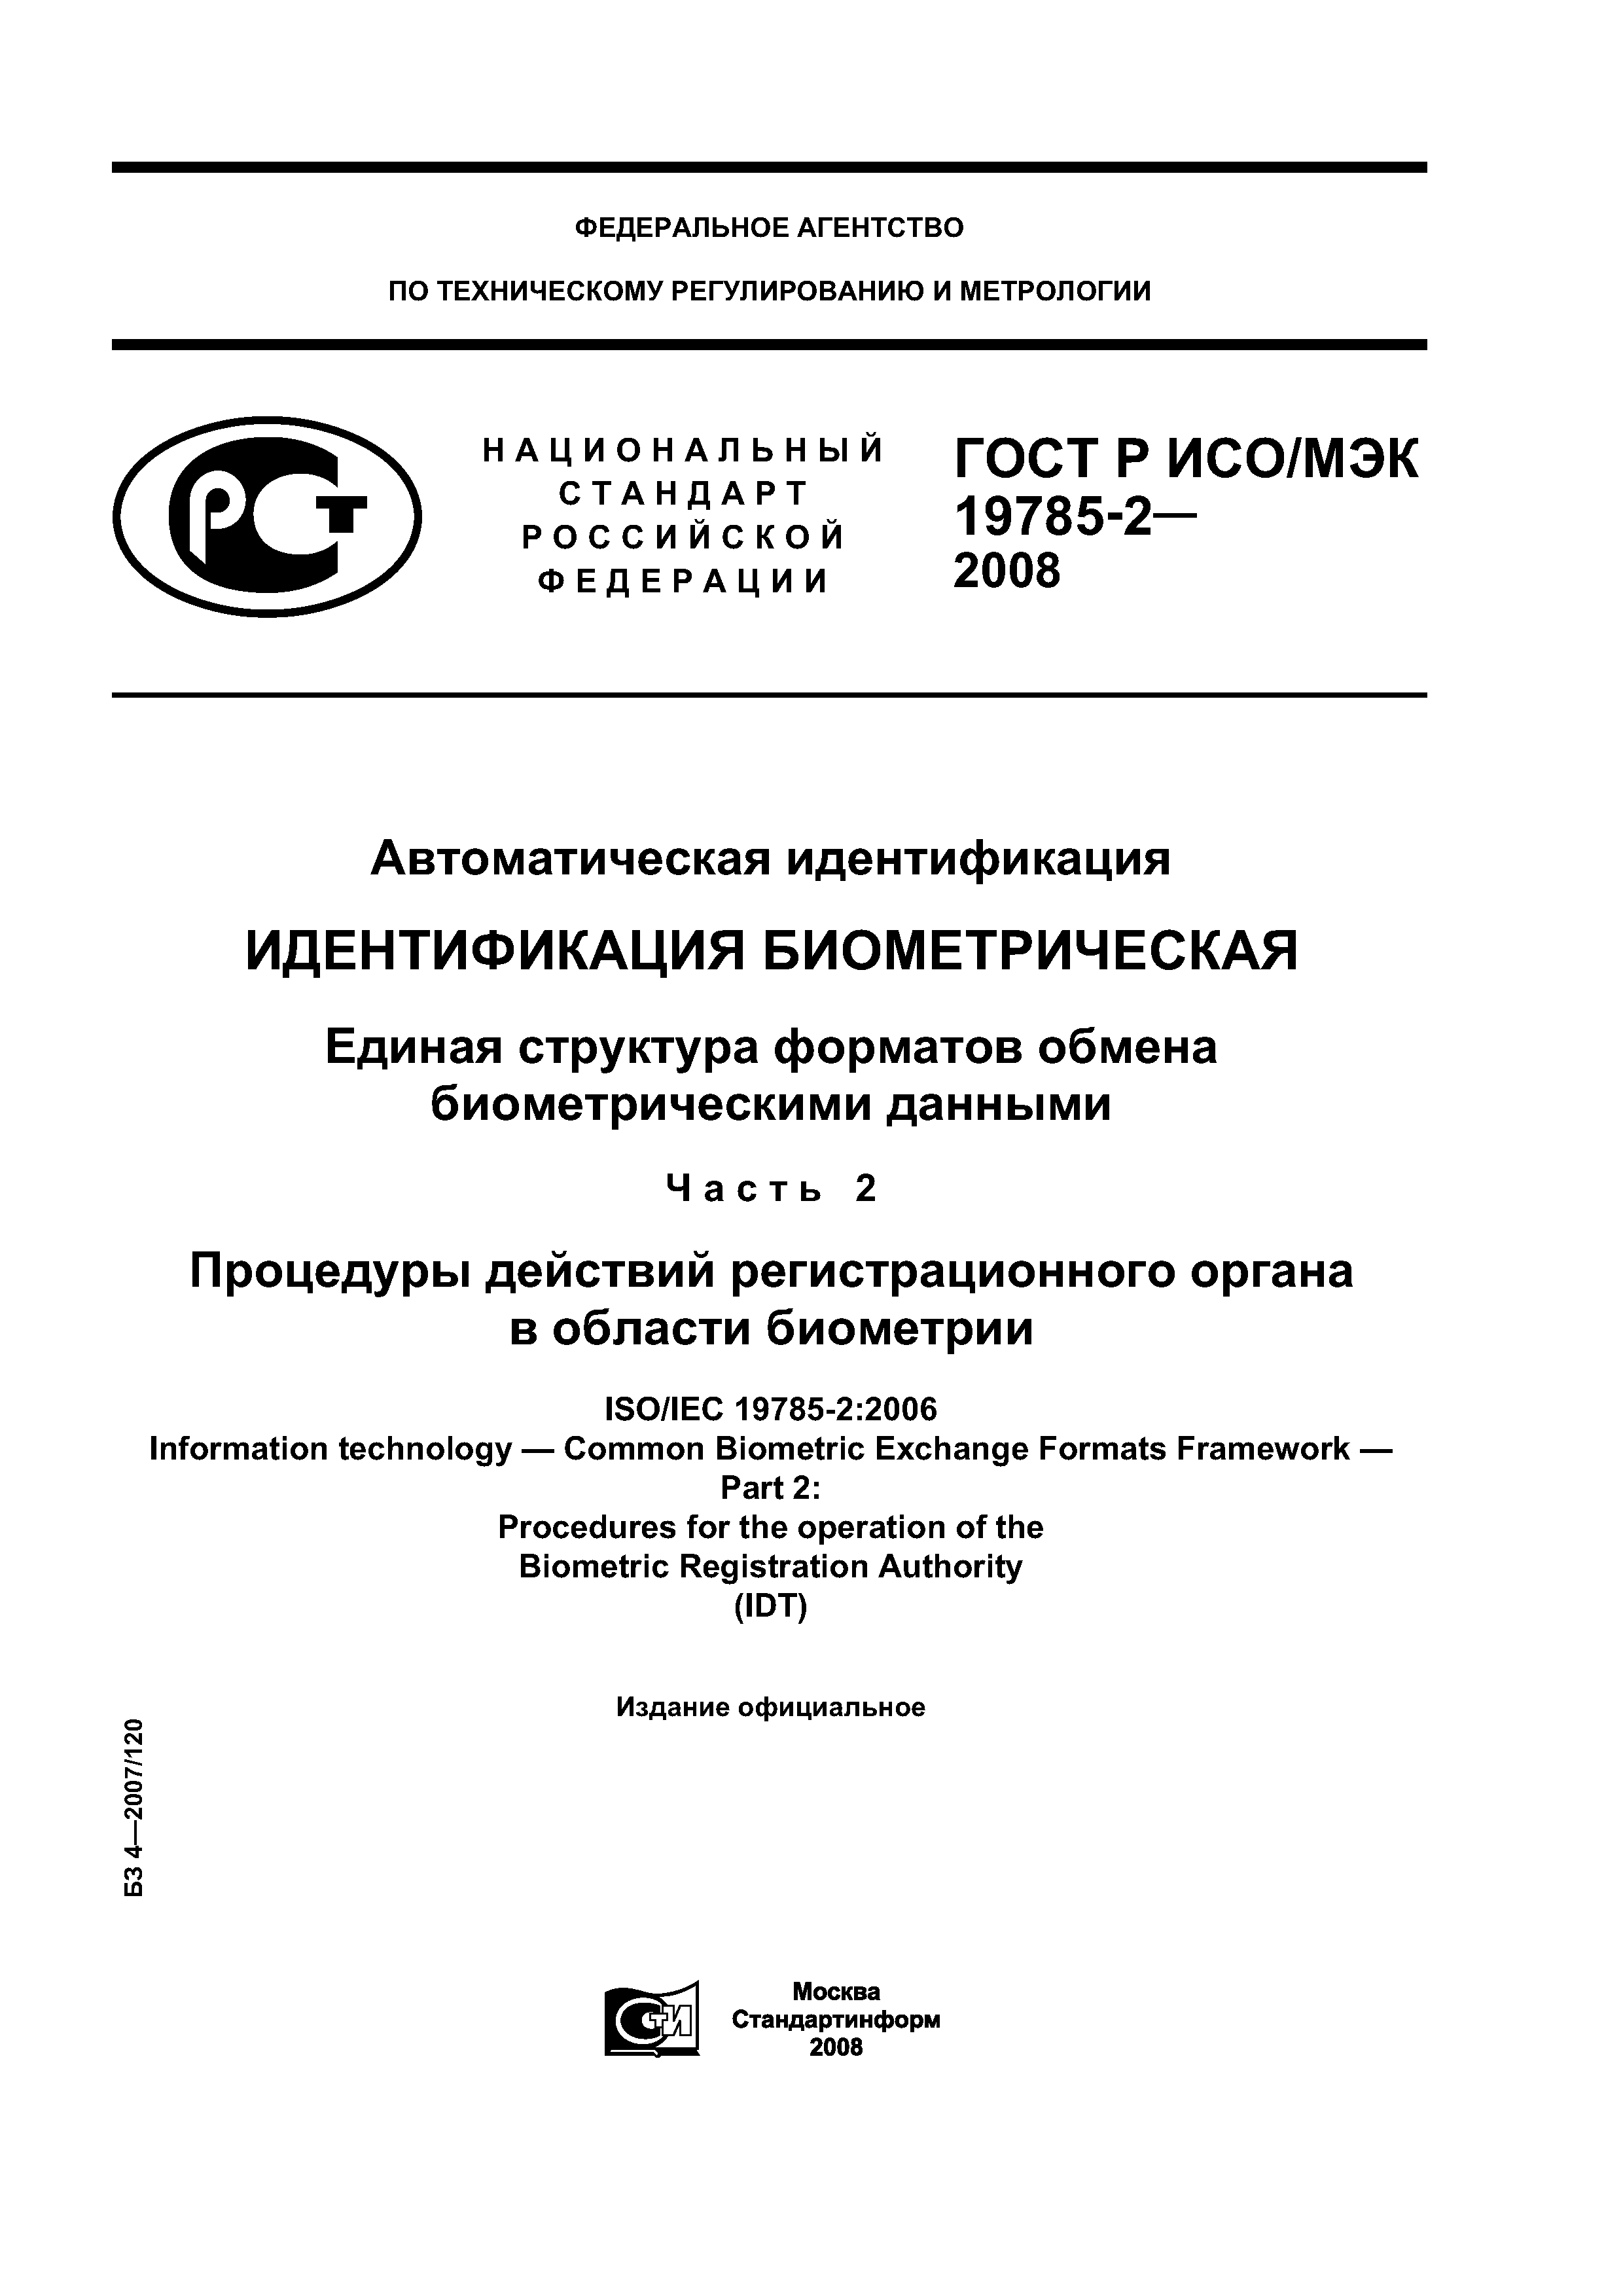 ГОСТ Р ИСО/МЭК 19785-2-2008